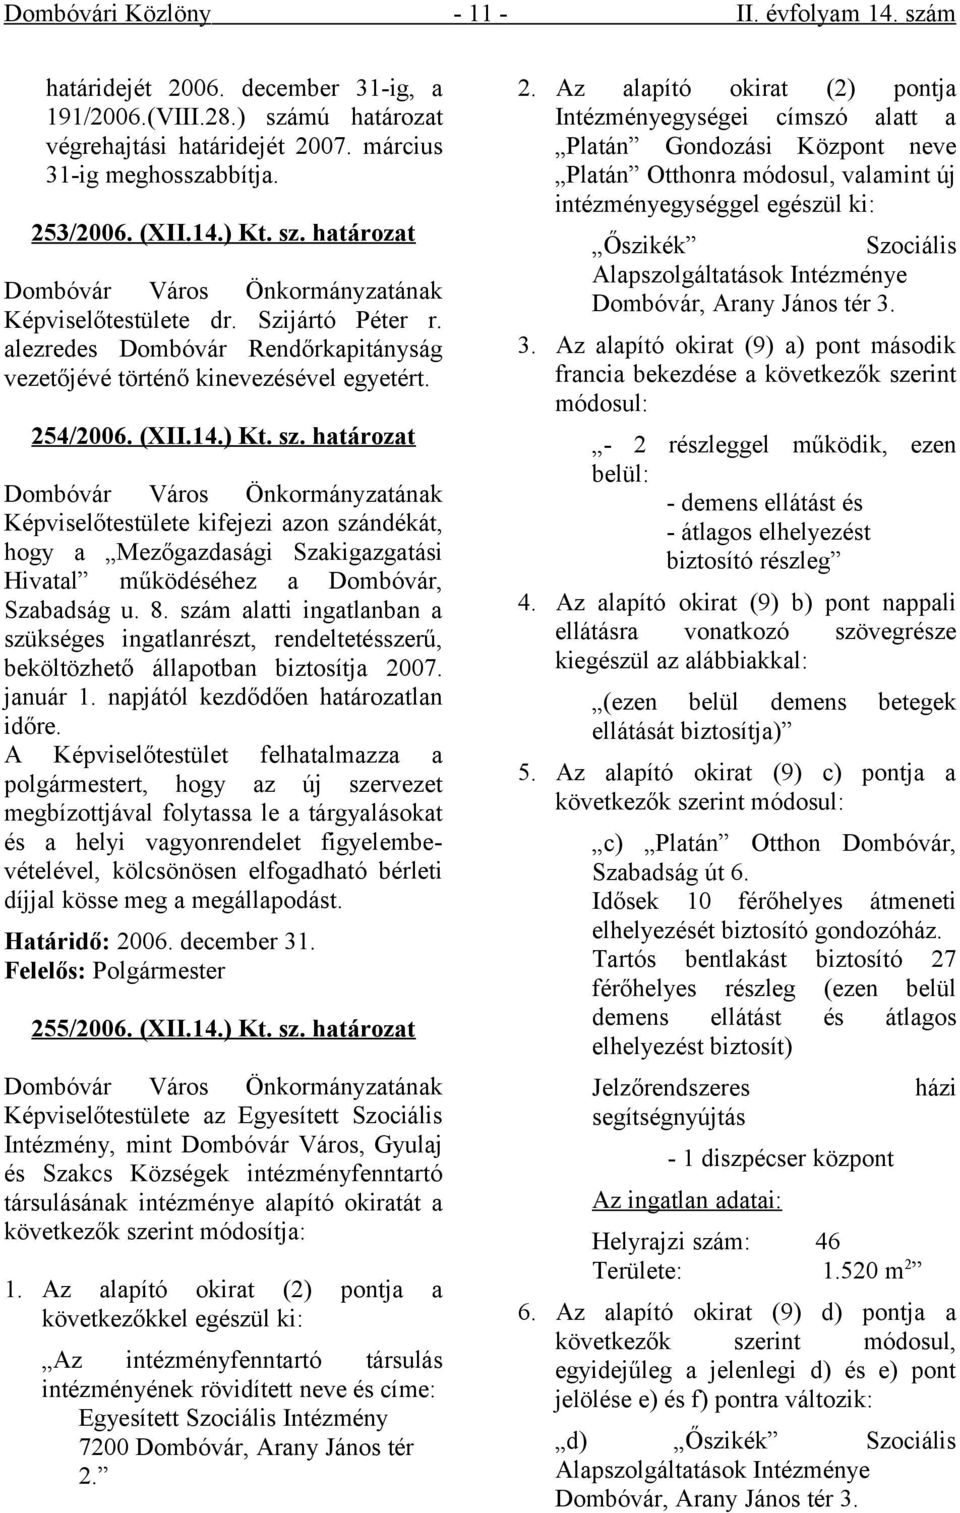 határozat Dombóvár Város Önkormányzatának Képviselőtestülete kifejezi azon szándékát, hogy a Mezőgazdasági Szakigazgatási Hivatal működéséhez a Dombóvár, Szabadság u. 8.